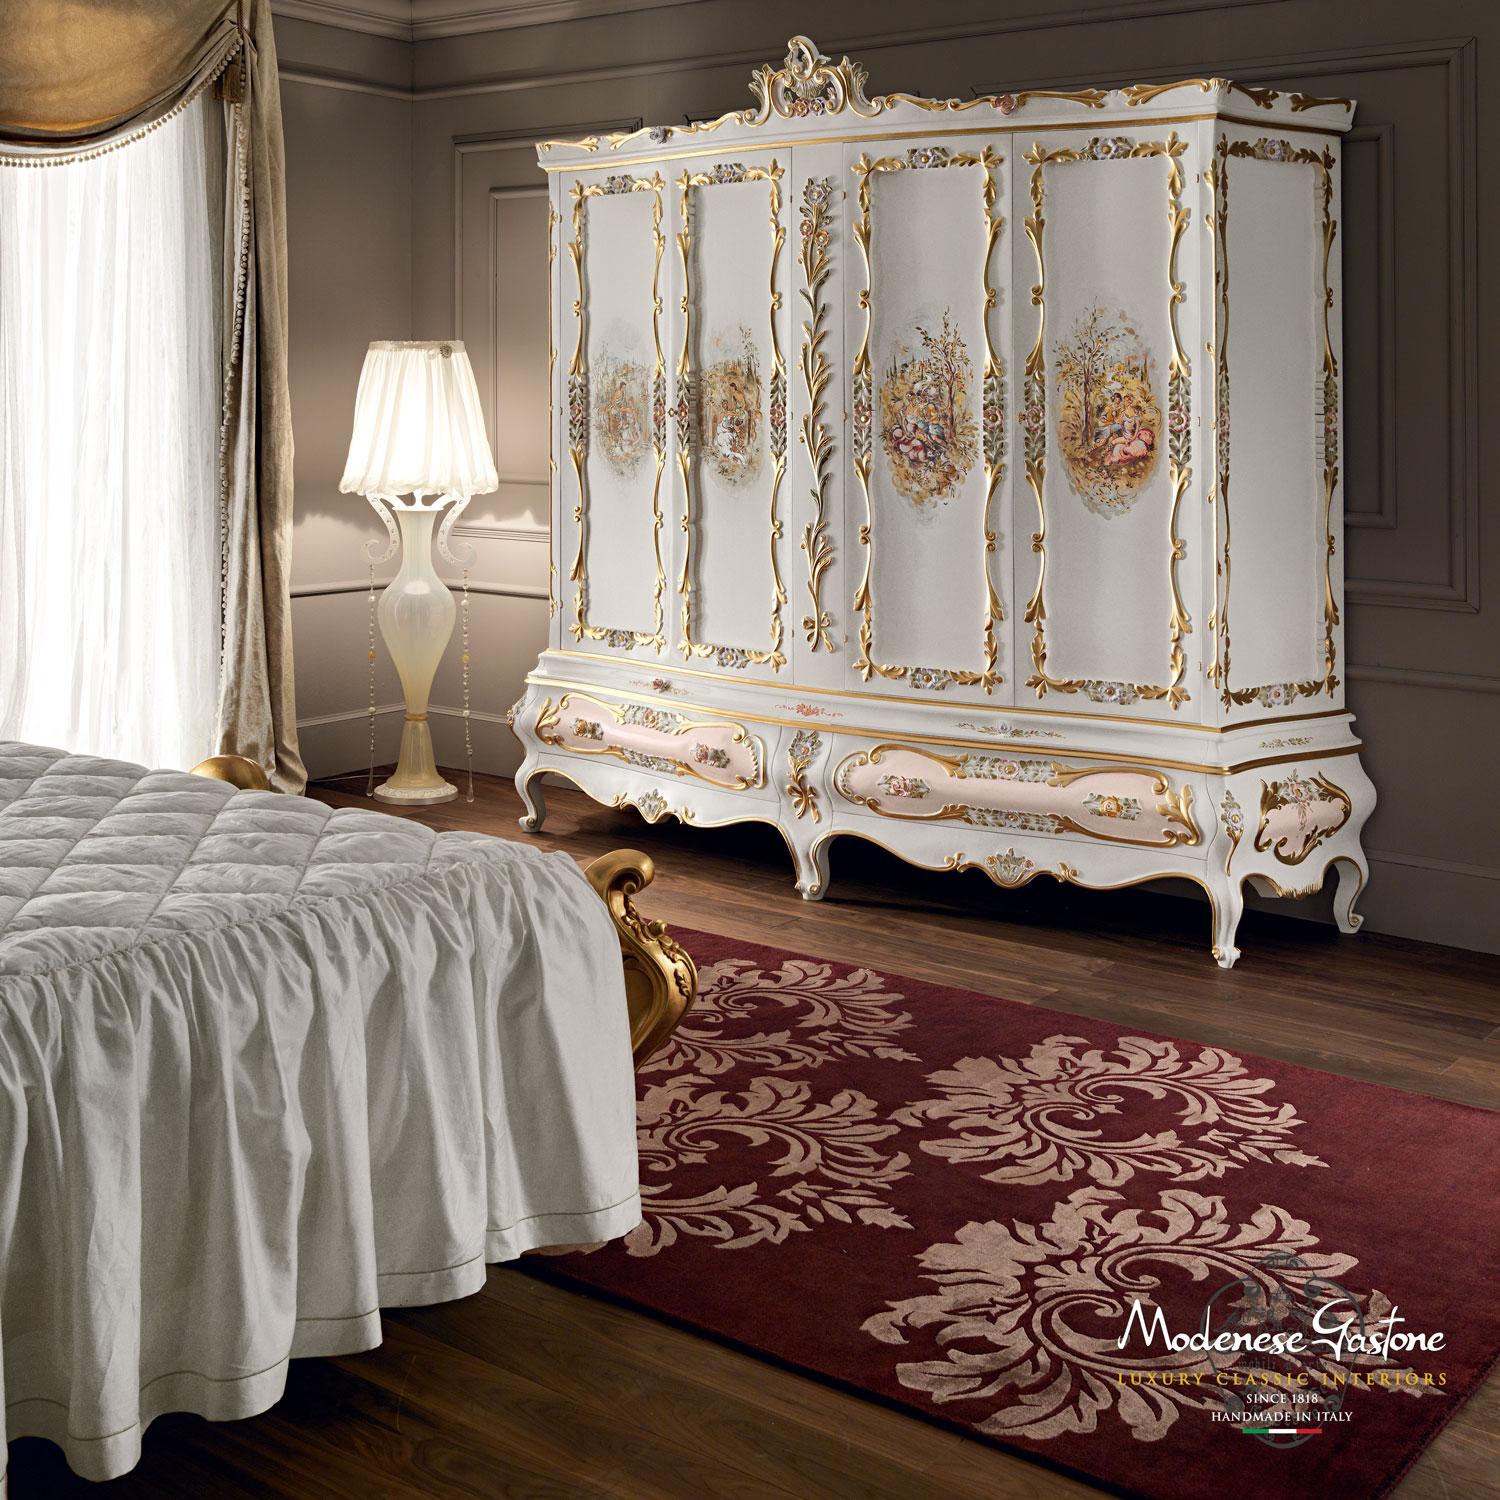 Vervollständigen Sie Ihr luxuriöses klassisches Schlafzimmer mit einem exklusiven italienischen Barock-Touch, indem Sie dieses Meisterwerk von Modenese Interiors hinzufügen: ein viertüriger Kleiderschrank mit handgemalten handwerklichen